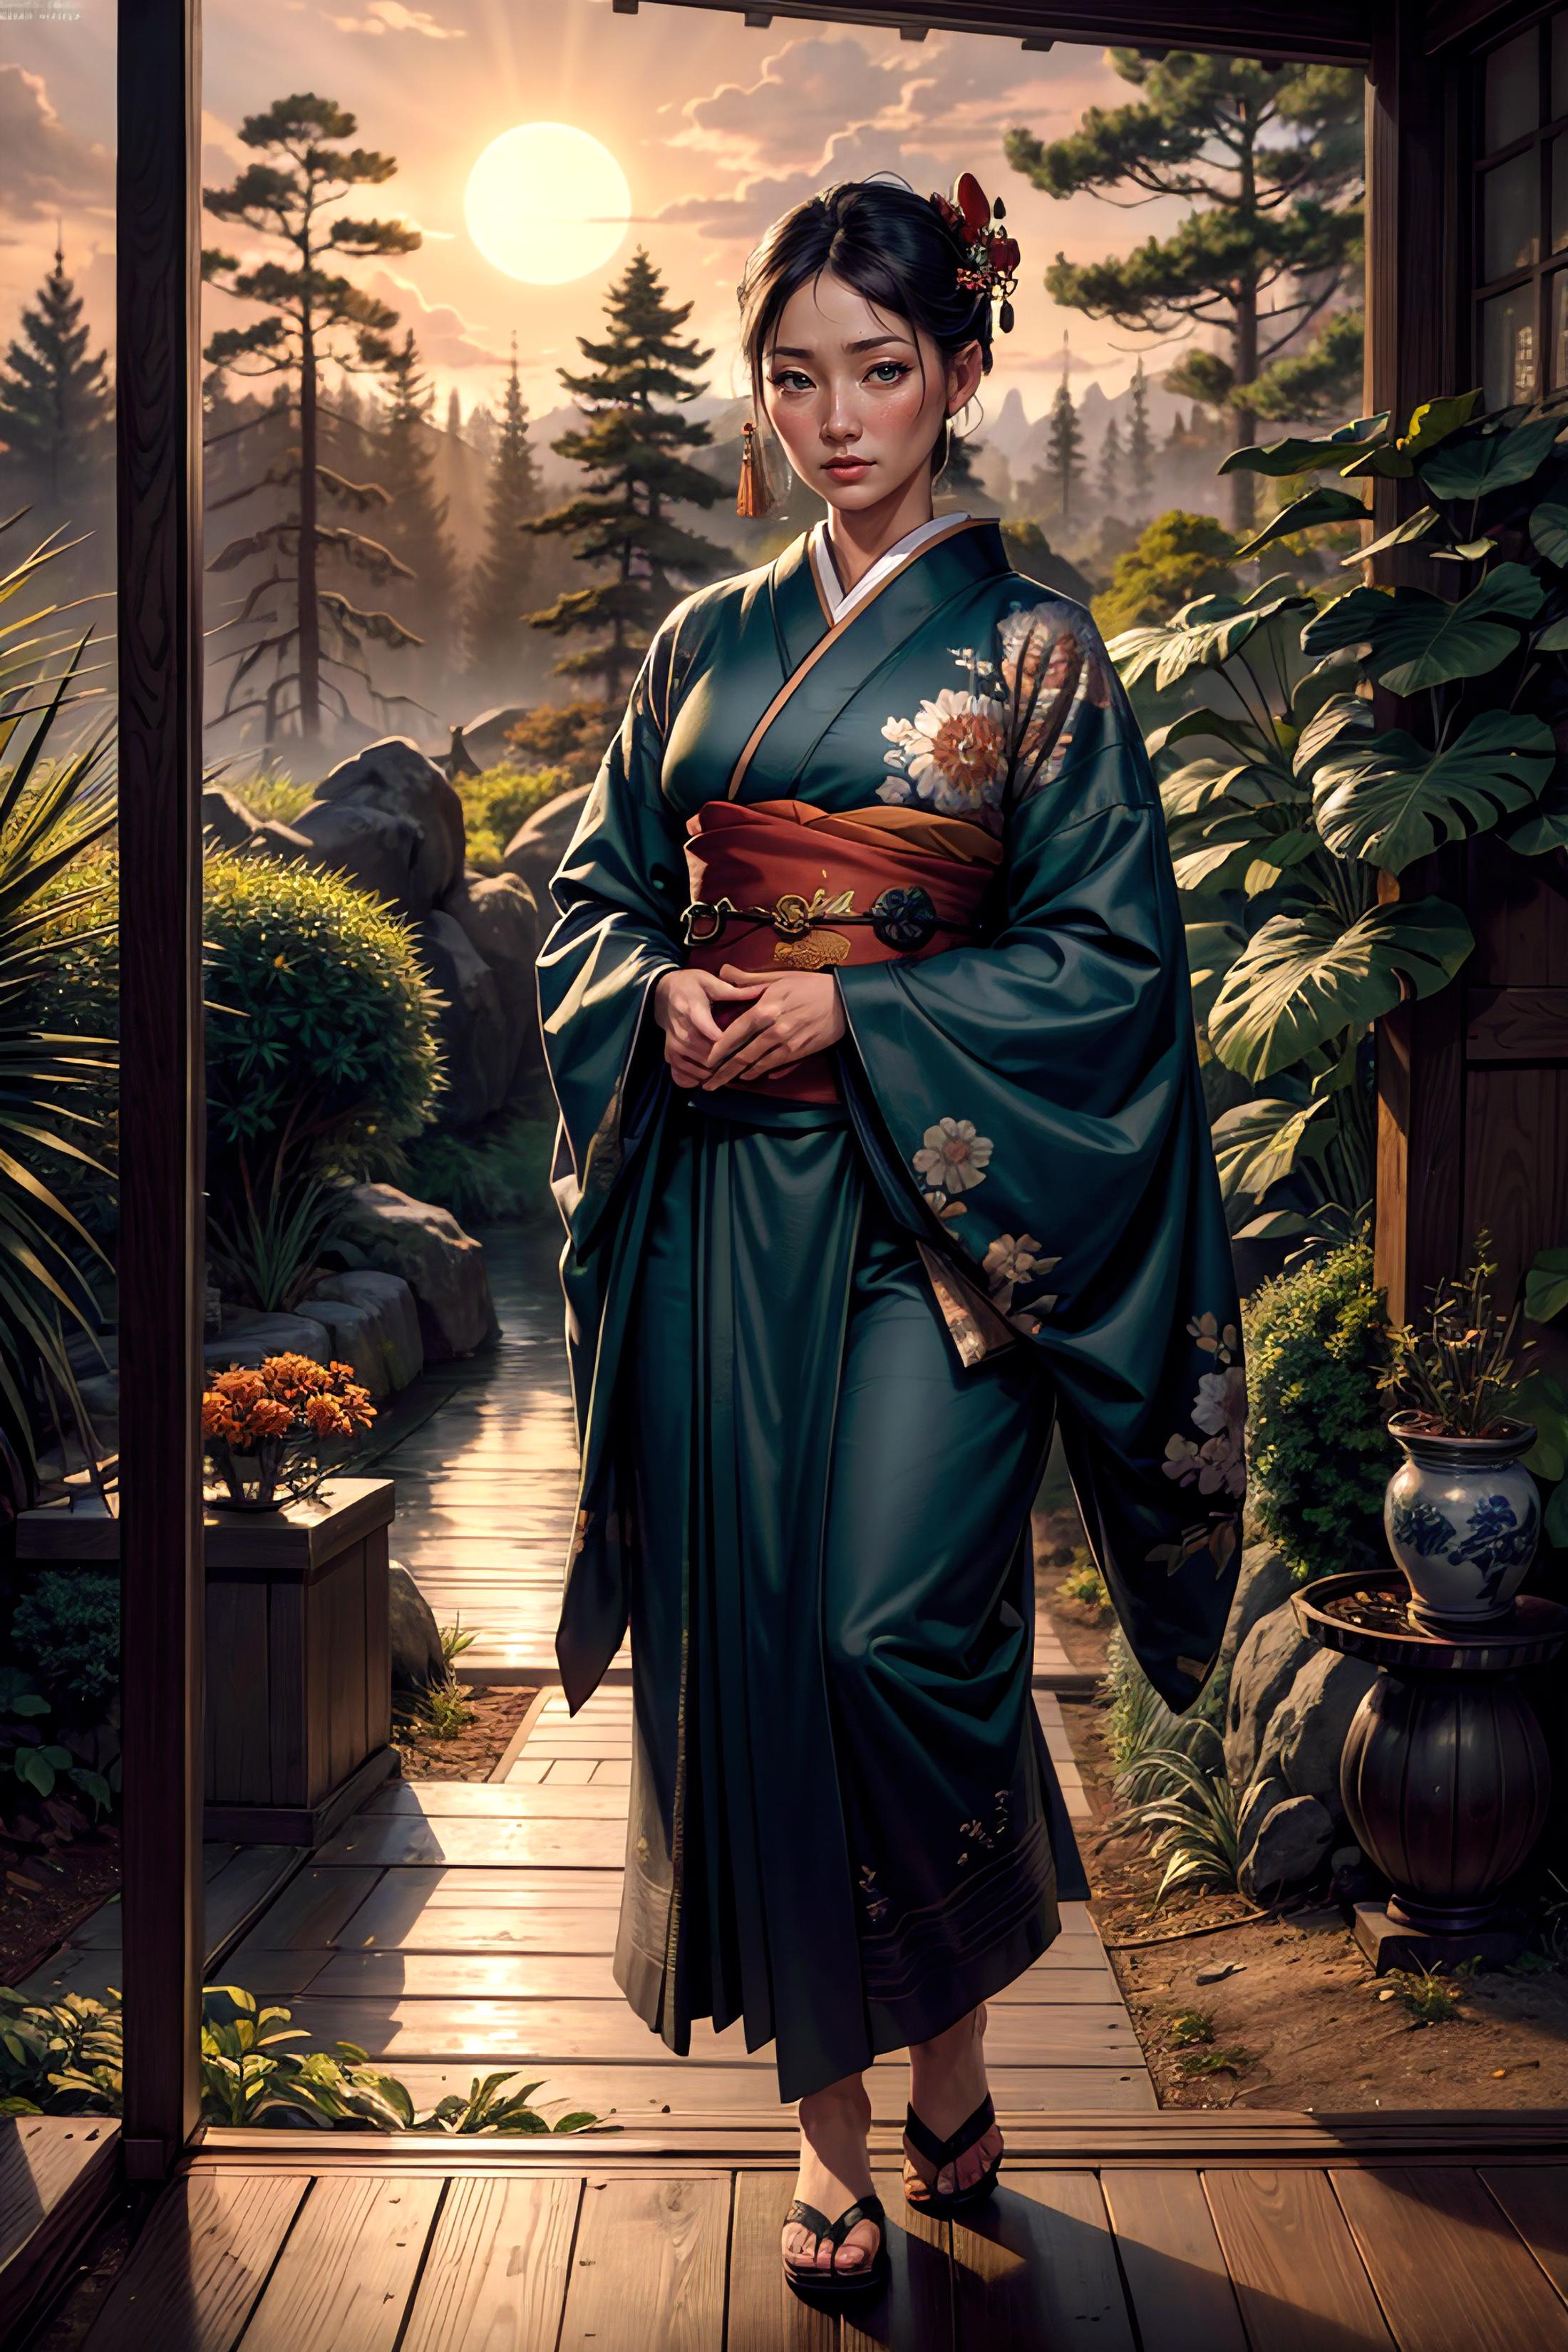 A woman in a kimono standing in a garden.